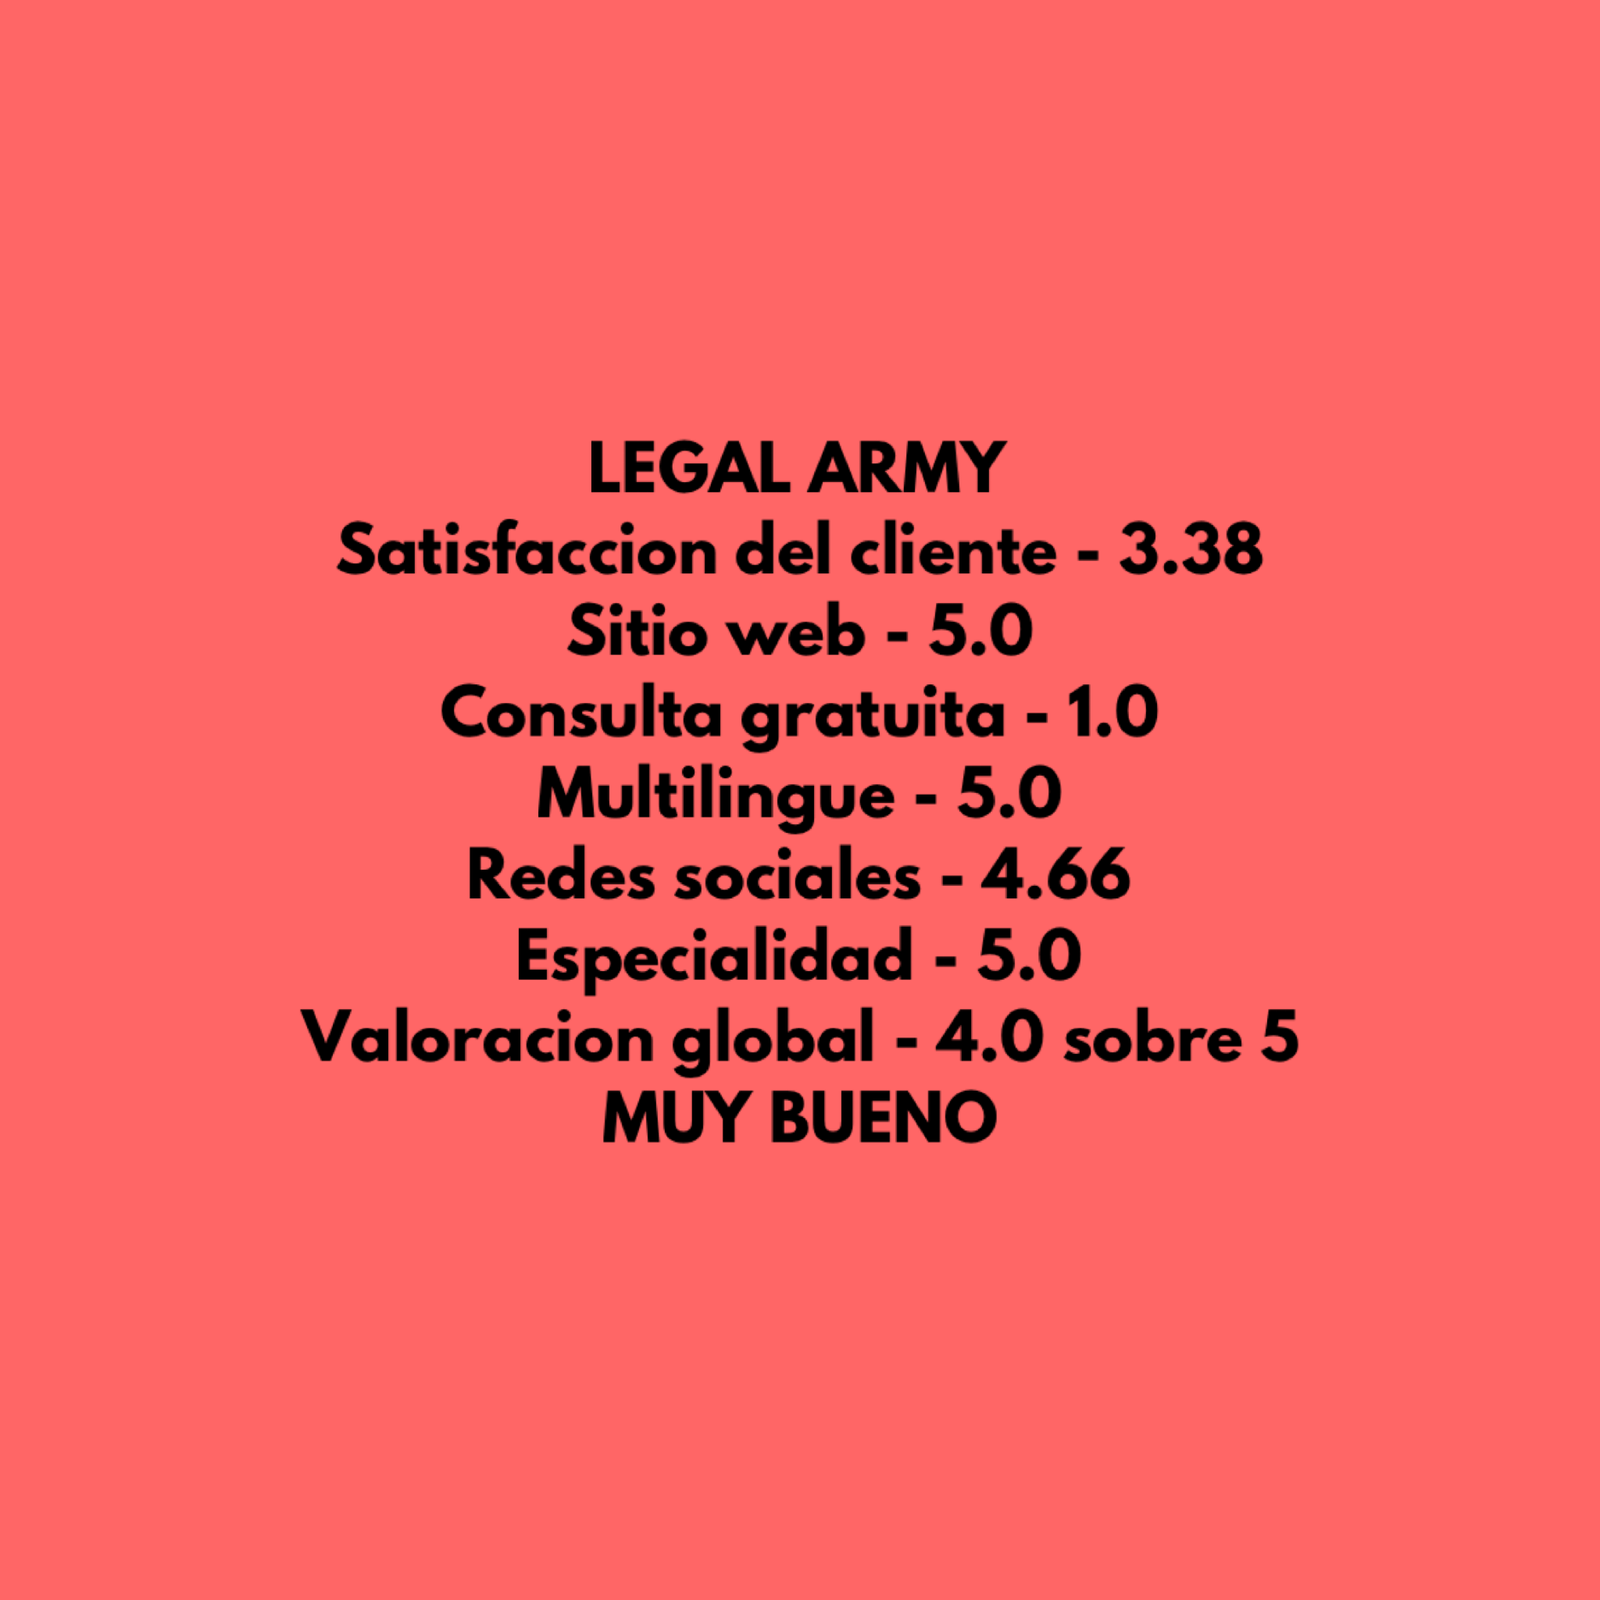 Legal Army